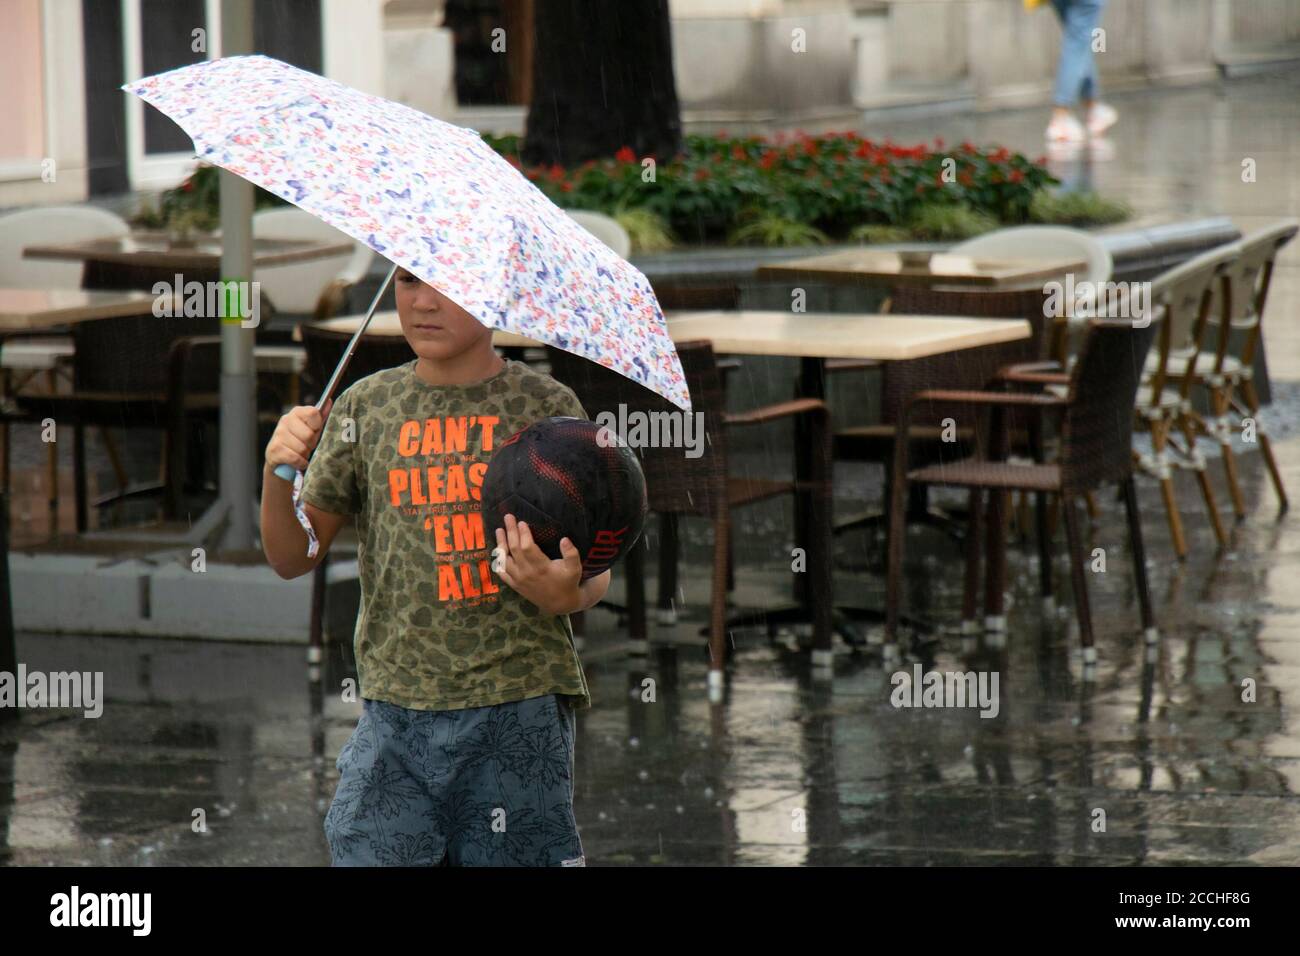 Belgrado, Serbia - 5 de agosto de 2020: Un joven que sostiene un baloncesto caminando bajo el paraguas en un día lluvioso en la zona peatonal de la calle de la ciudad Foto de stock